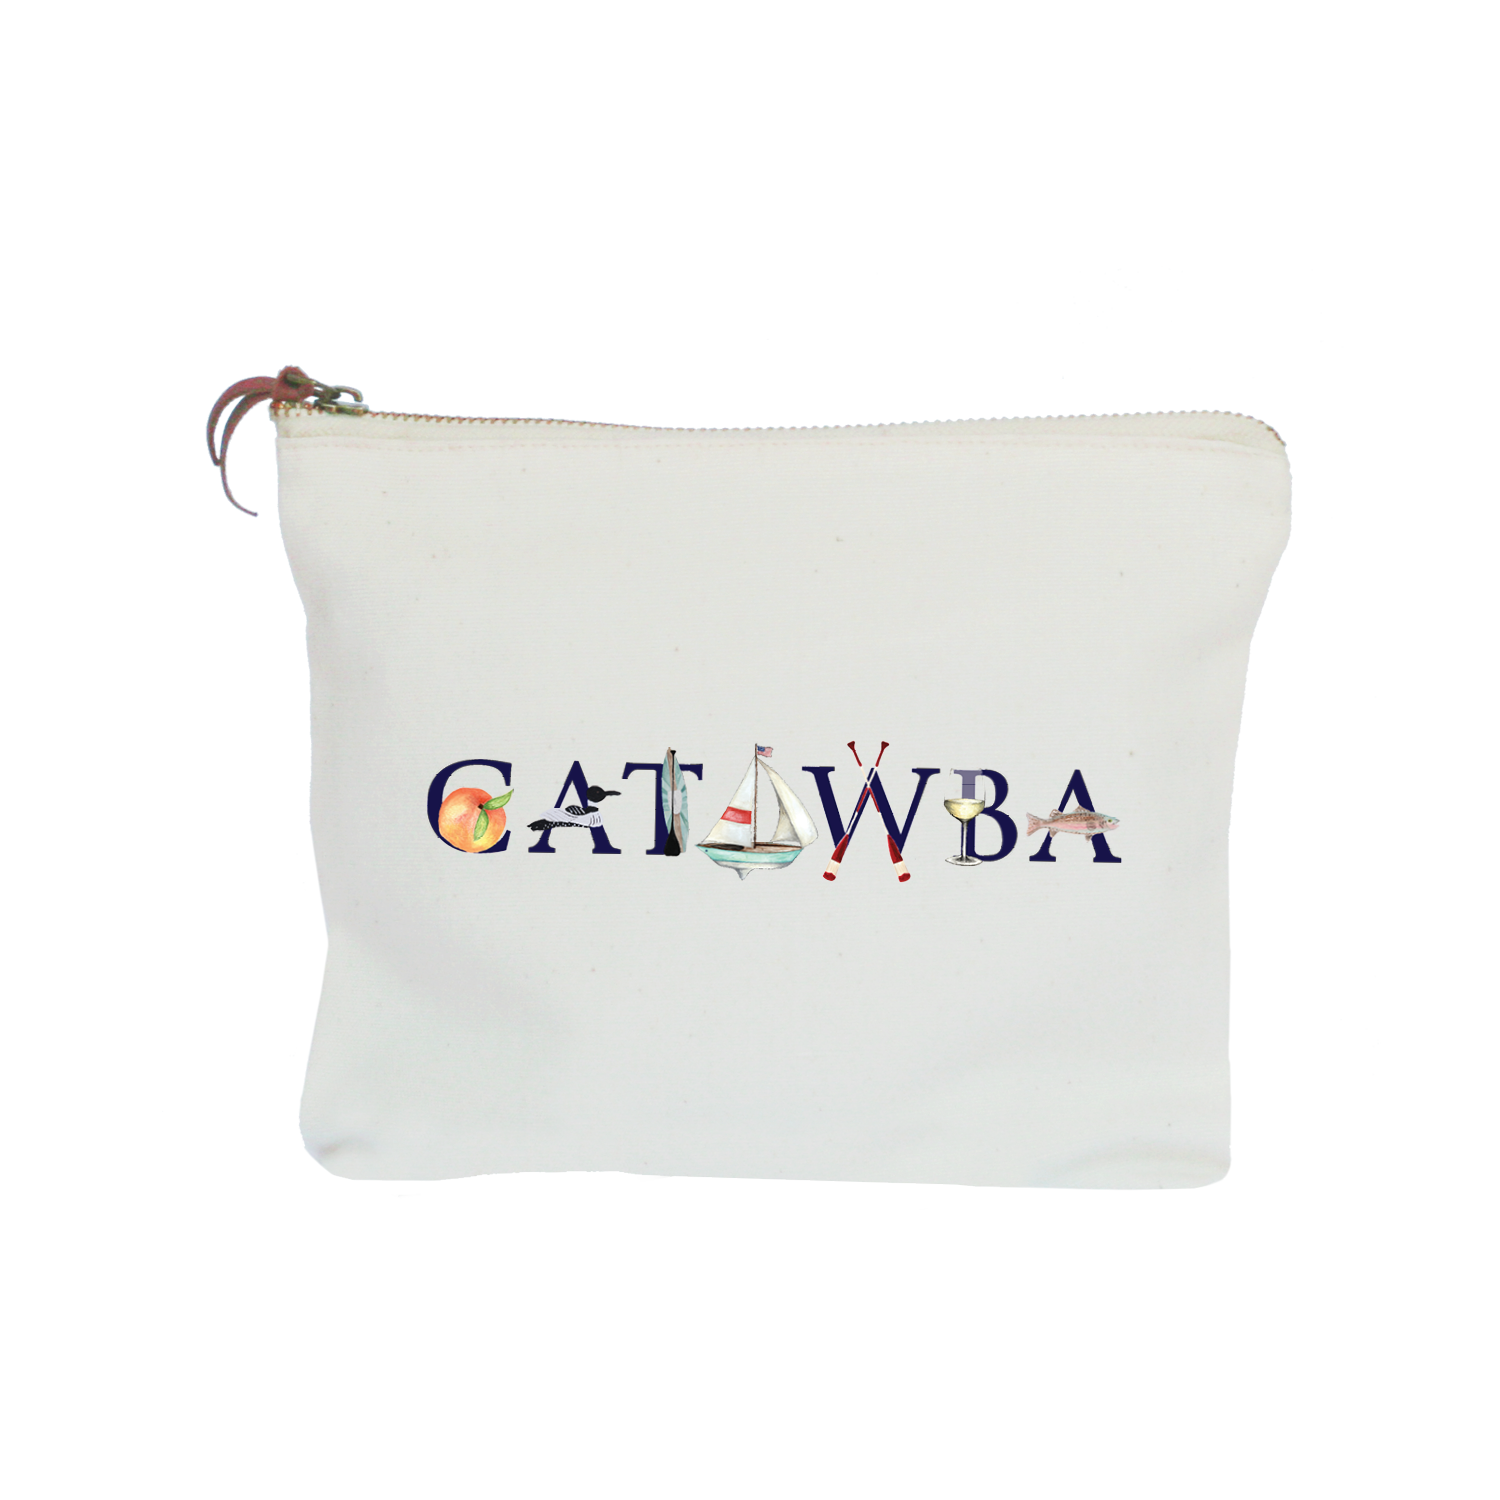 catawba zipper pouch